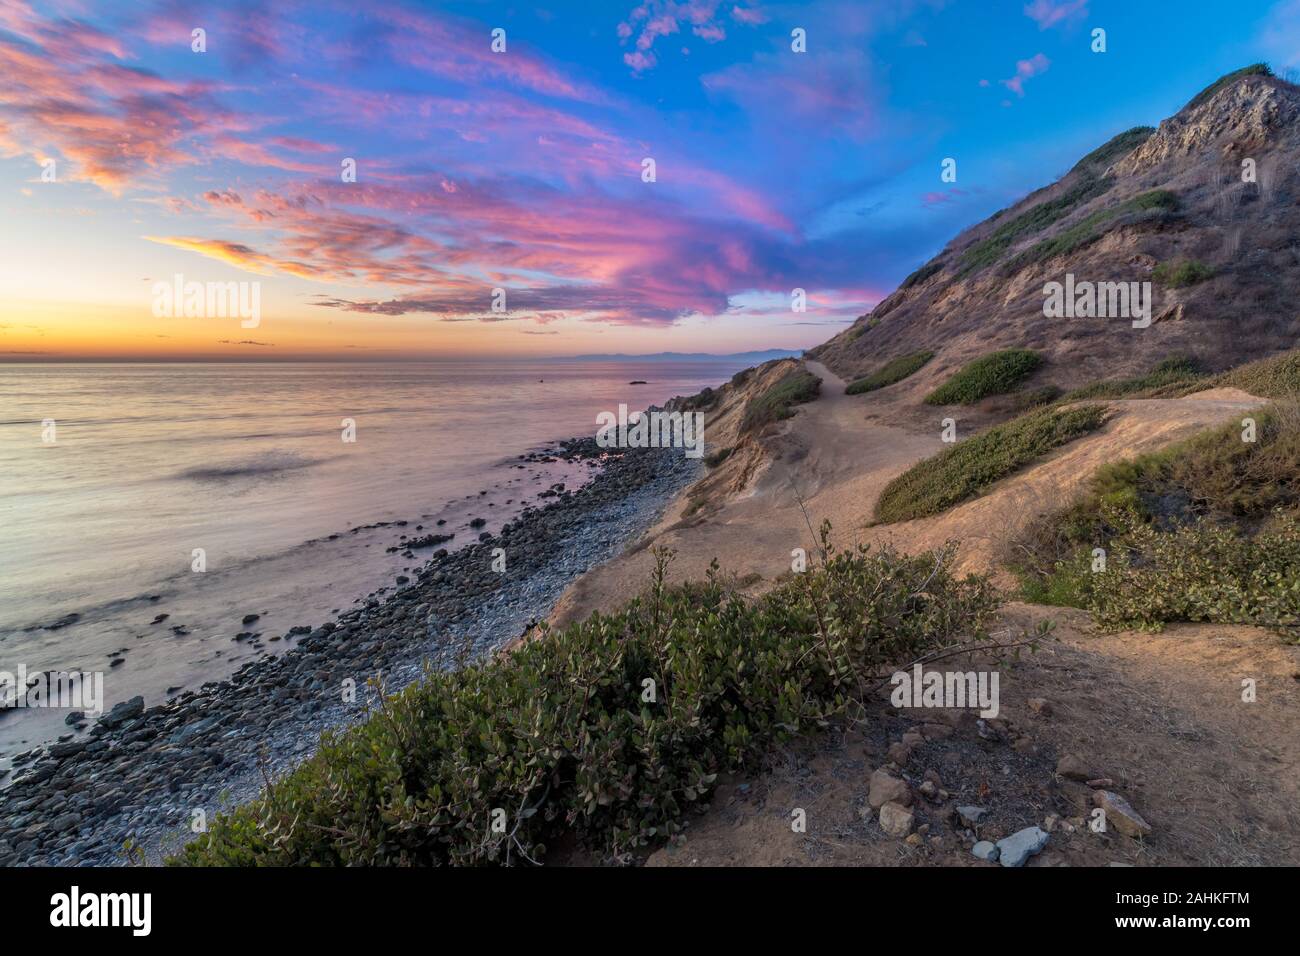 Lange Belichtung Foto des südlichen Kalifornien Küste nach Sonnenuntergang mit dramatischen Wolken im Himmel, Bluff Cove, Palos Verdes Estates, Kalifornien Stockfoto